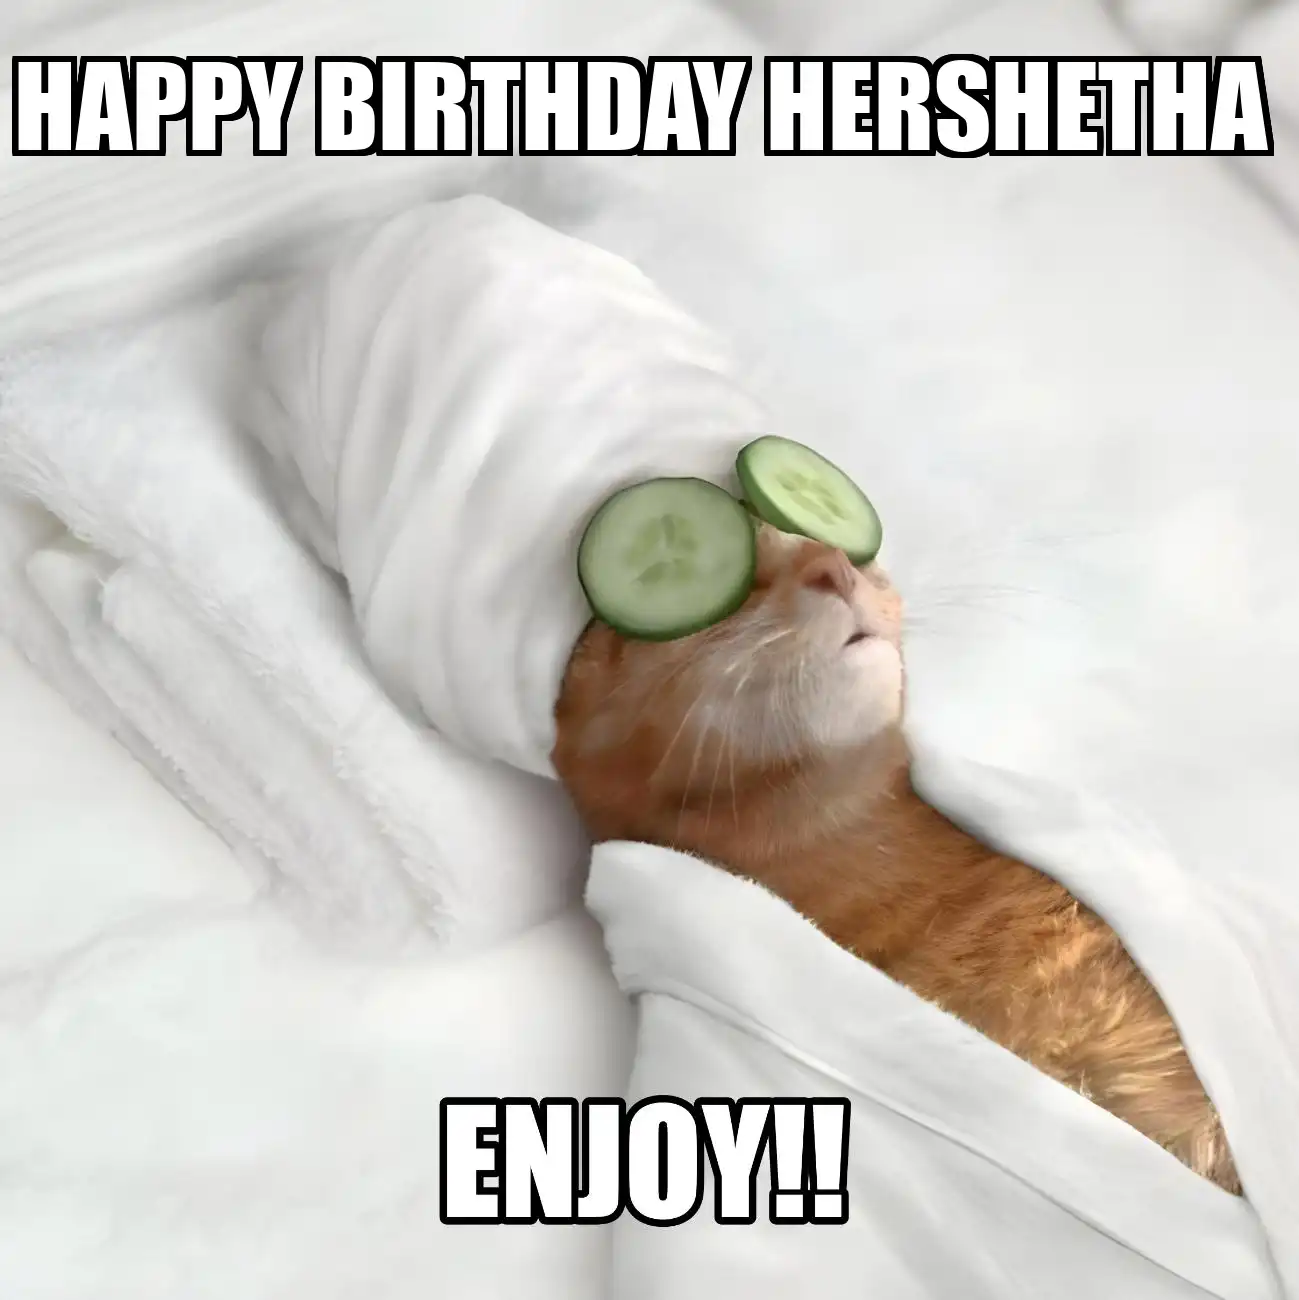 Happy Birthday Hershetha Enjoy Cat Meme